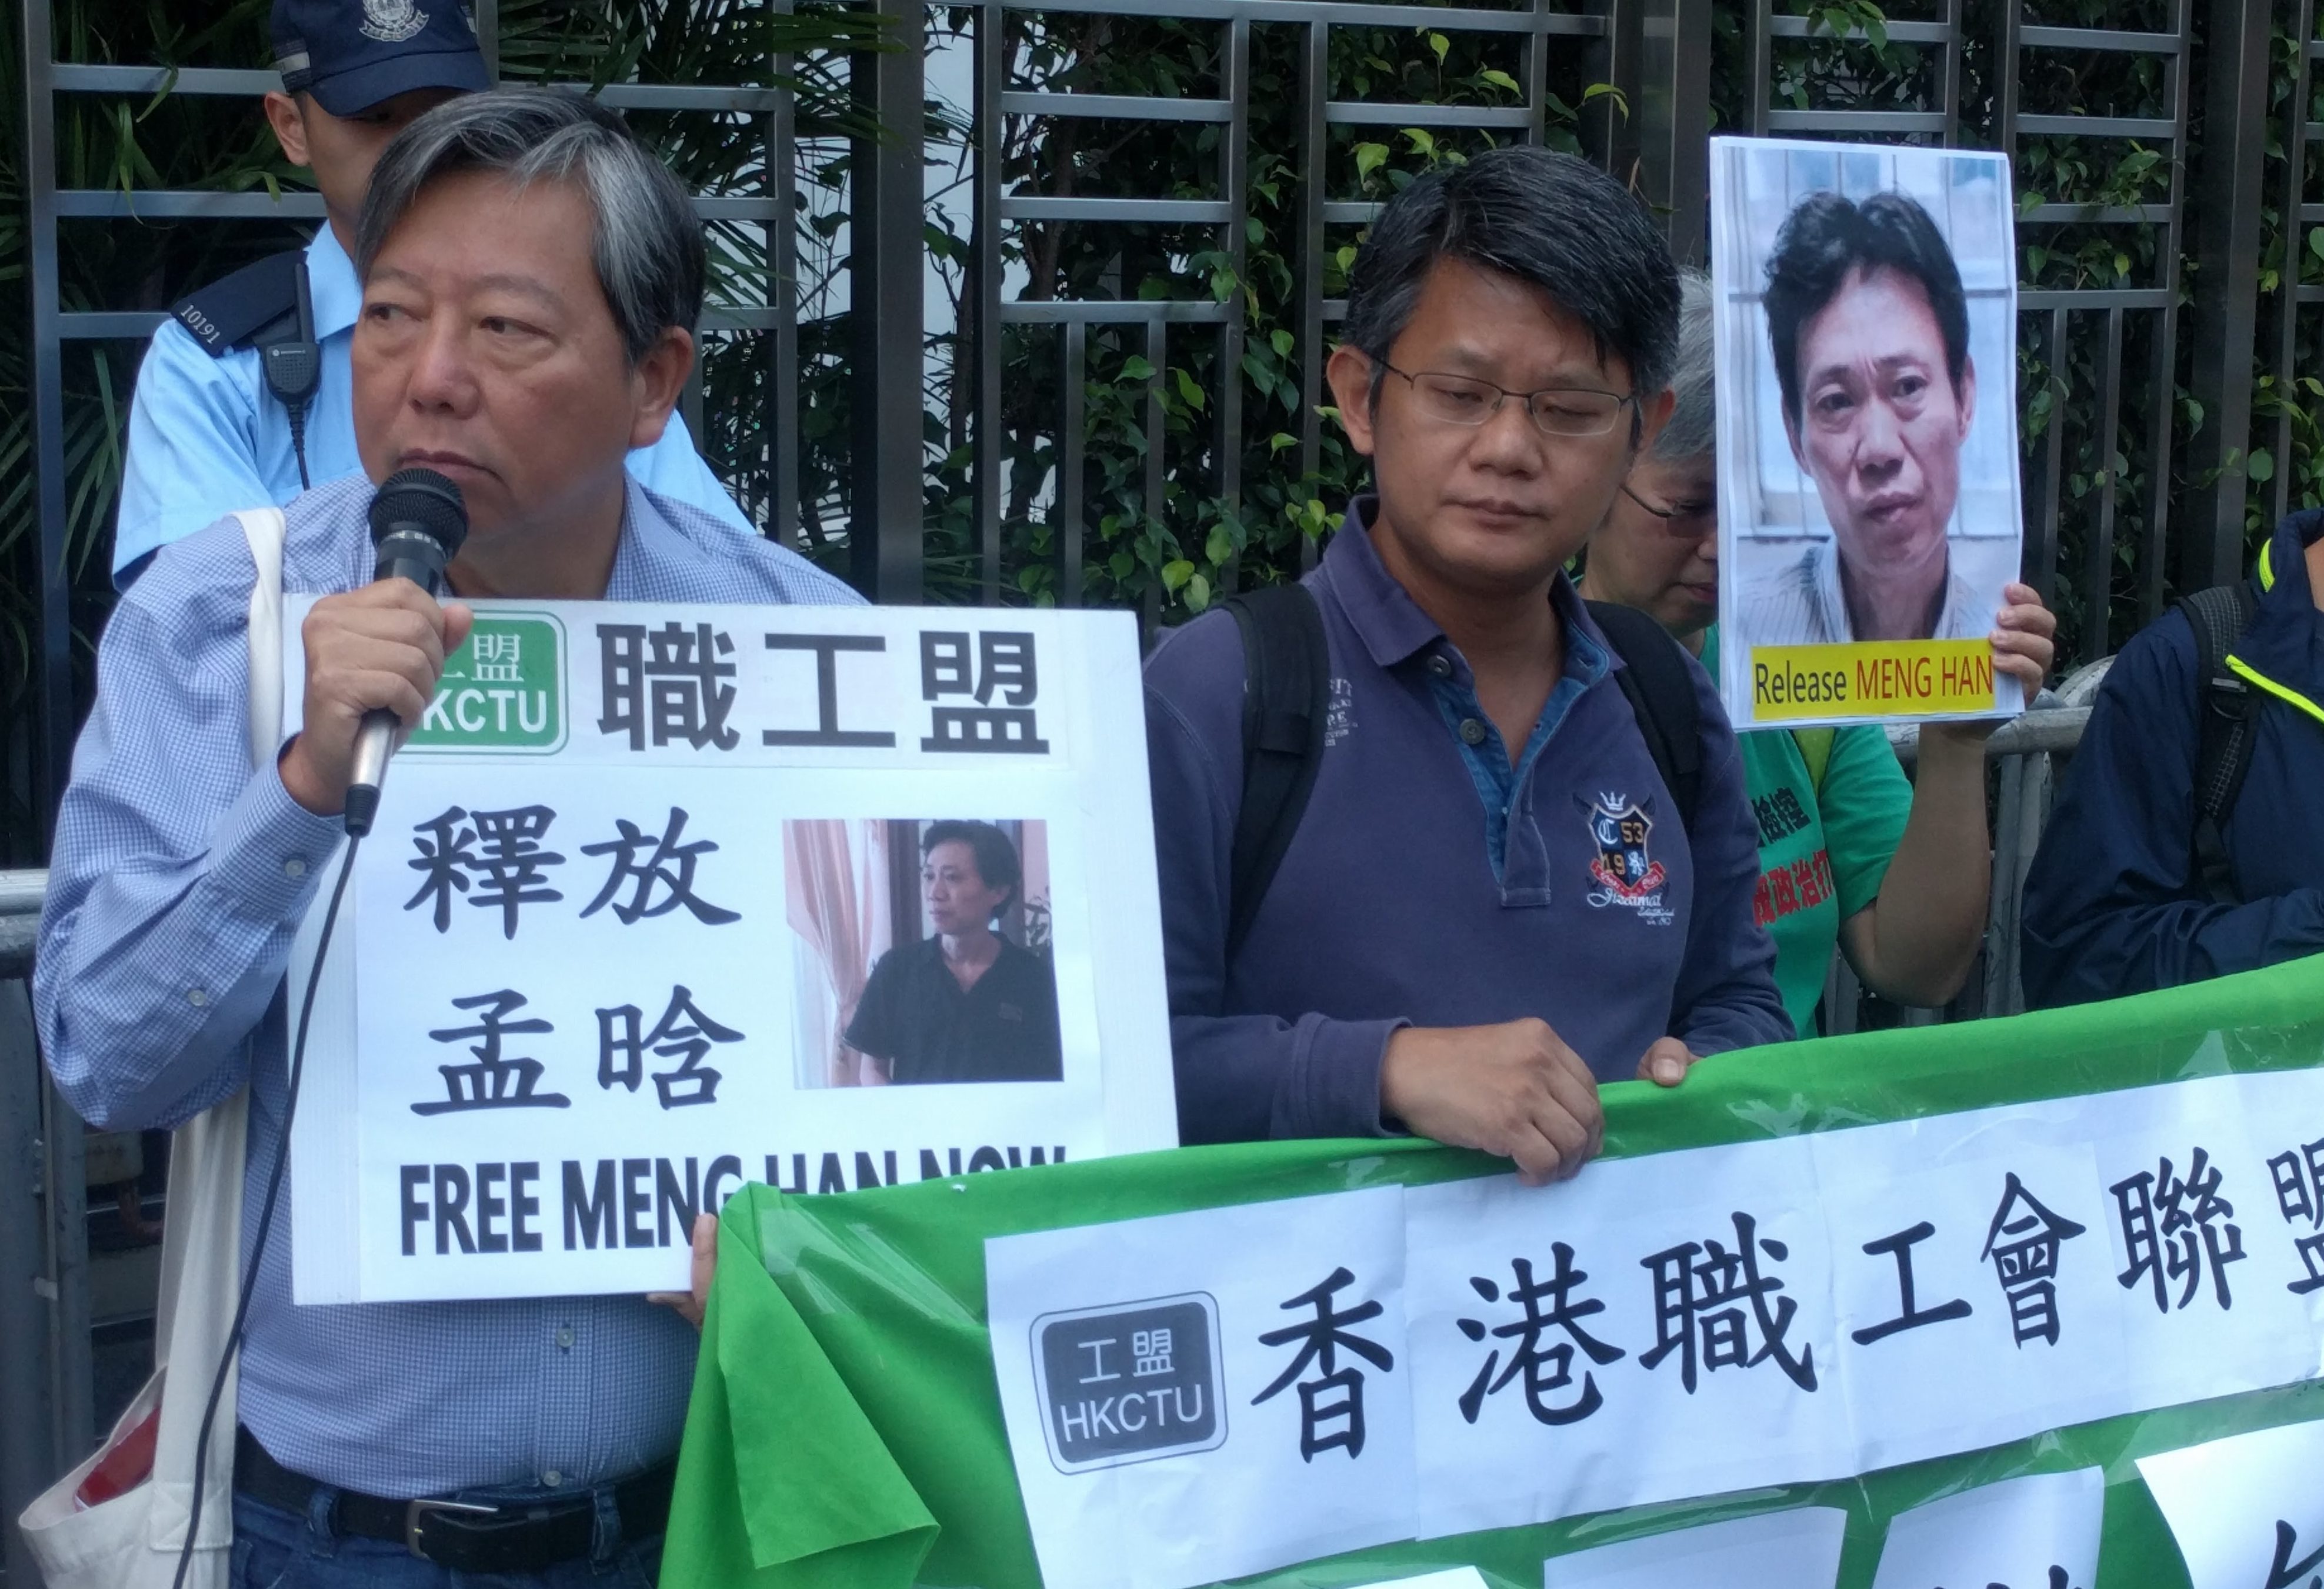 El activista laboralista chino Meng Han es declarado culpable y condenado a 1 año y 9 meses